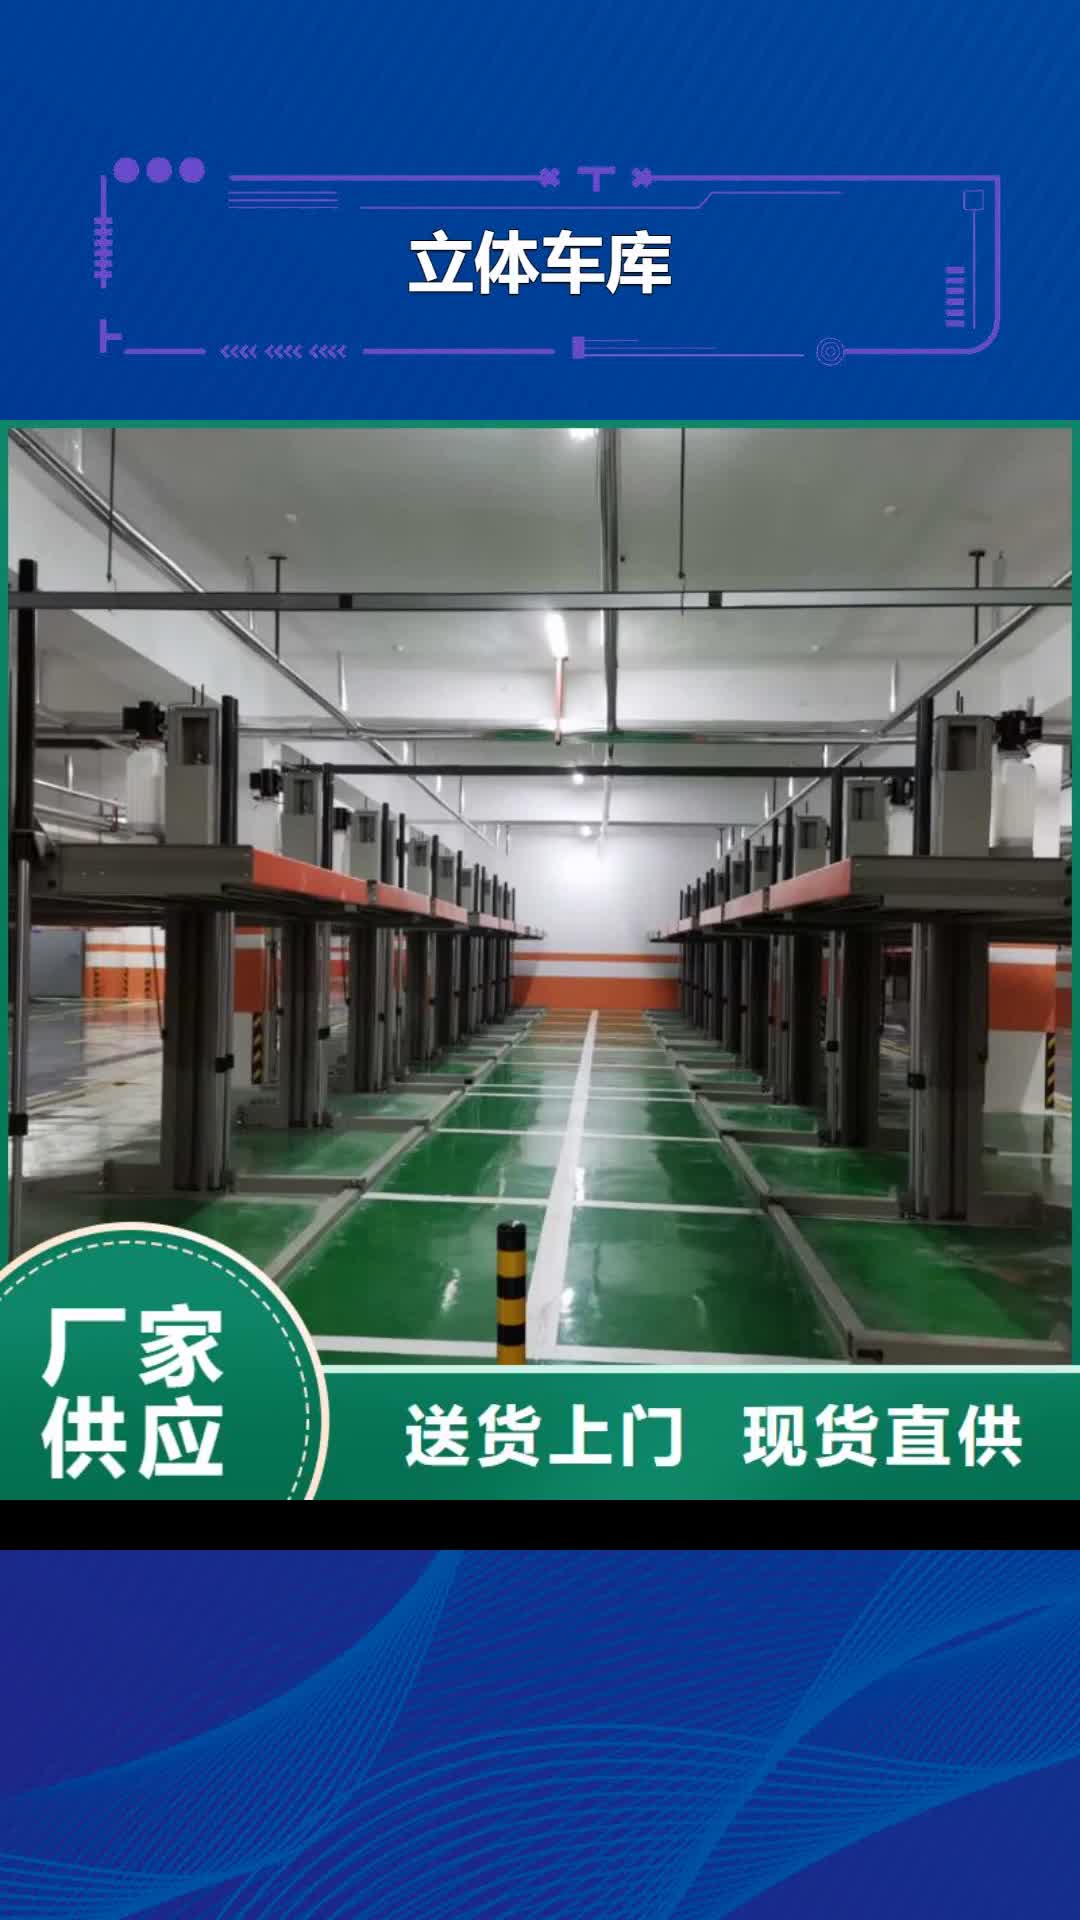 北京【立体车库】,立体车库改造多种规格供您选择